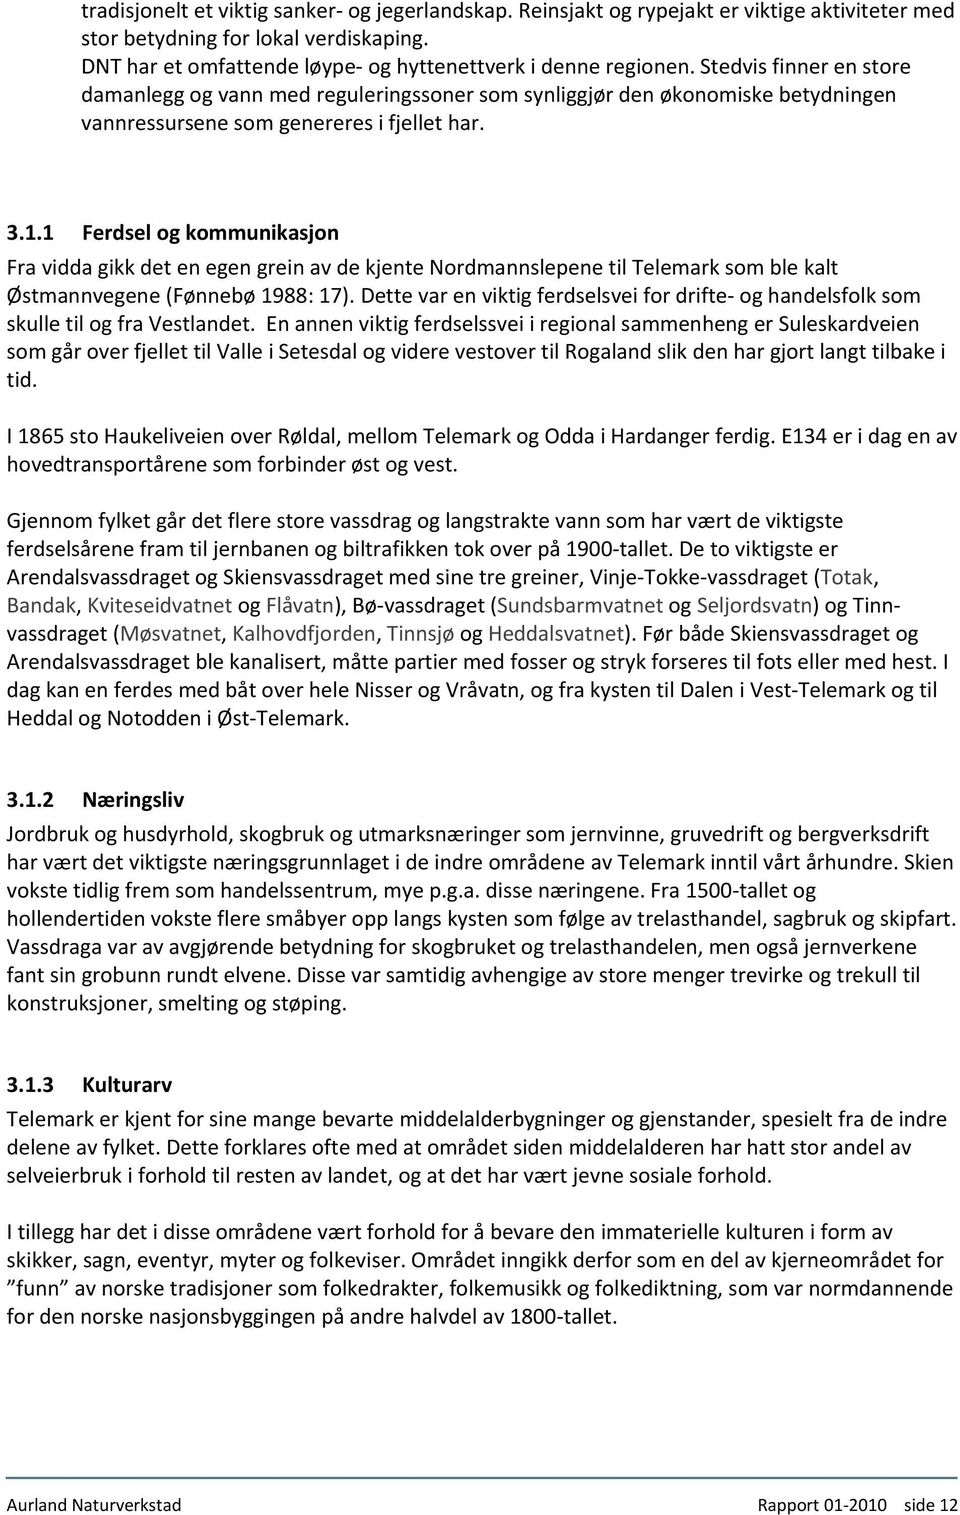 1 67BFerdsel og kommunikasjon Fra vidda gikk det en egen grein av de kjente Nordmannslepene til Telemark som ble kalt Østmannvegene (Fønnebø 1988: 17).